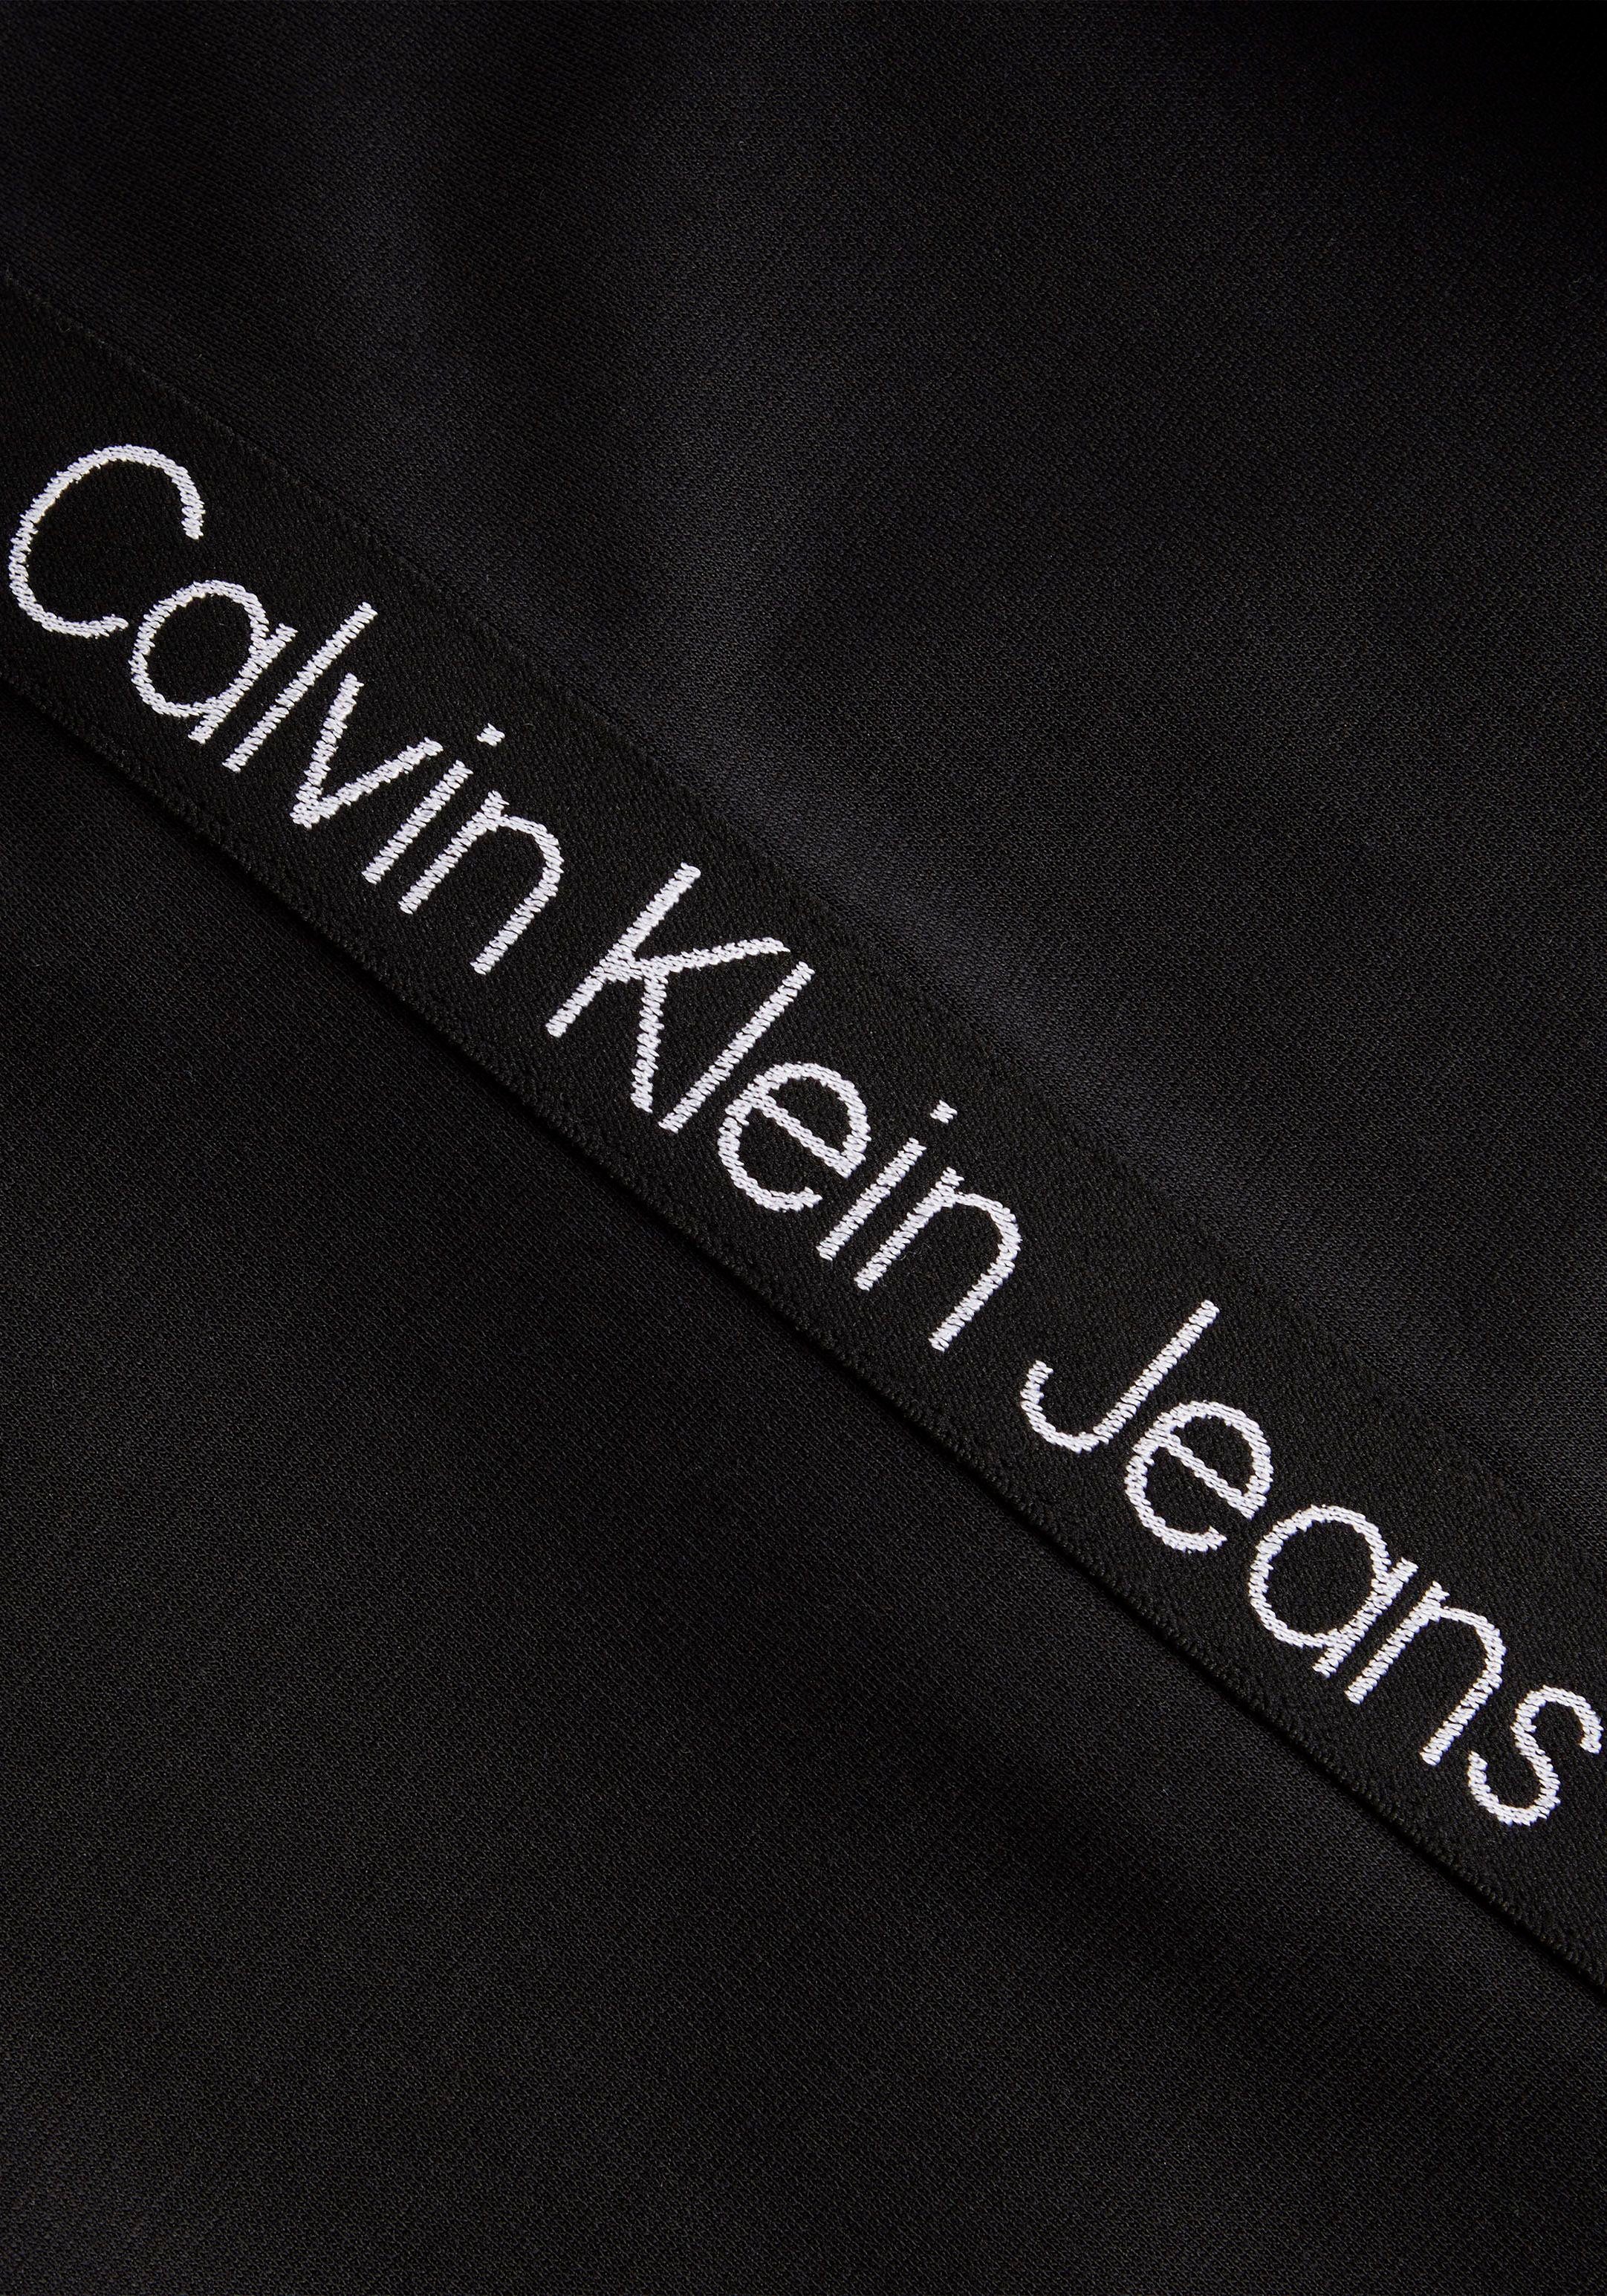 Jeans hohem Rundhalsausschnitt mit Klein Shirtkleid Calvin Plus